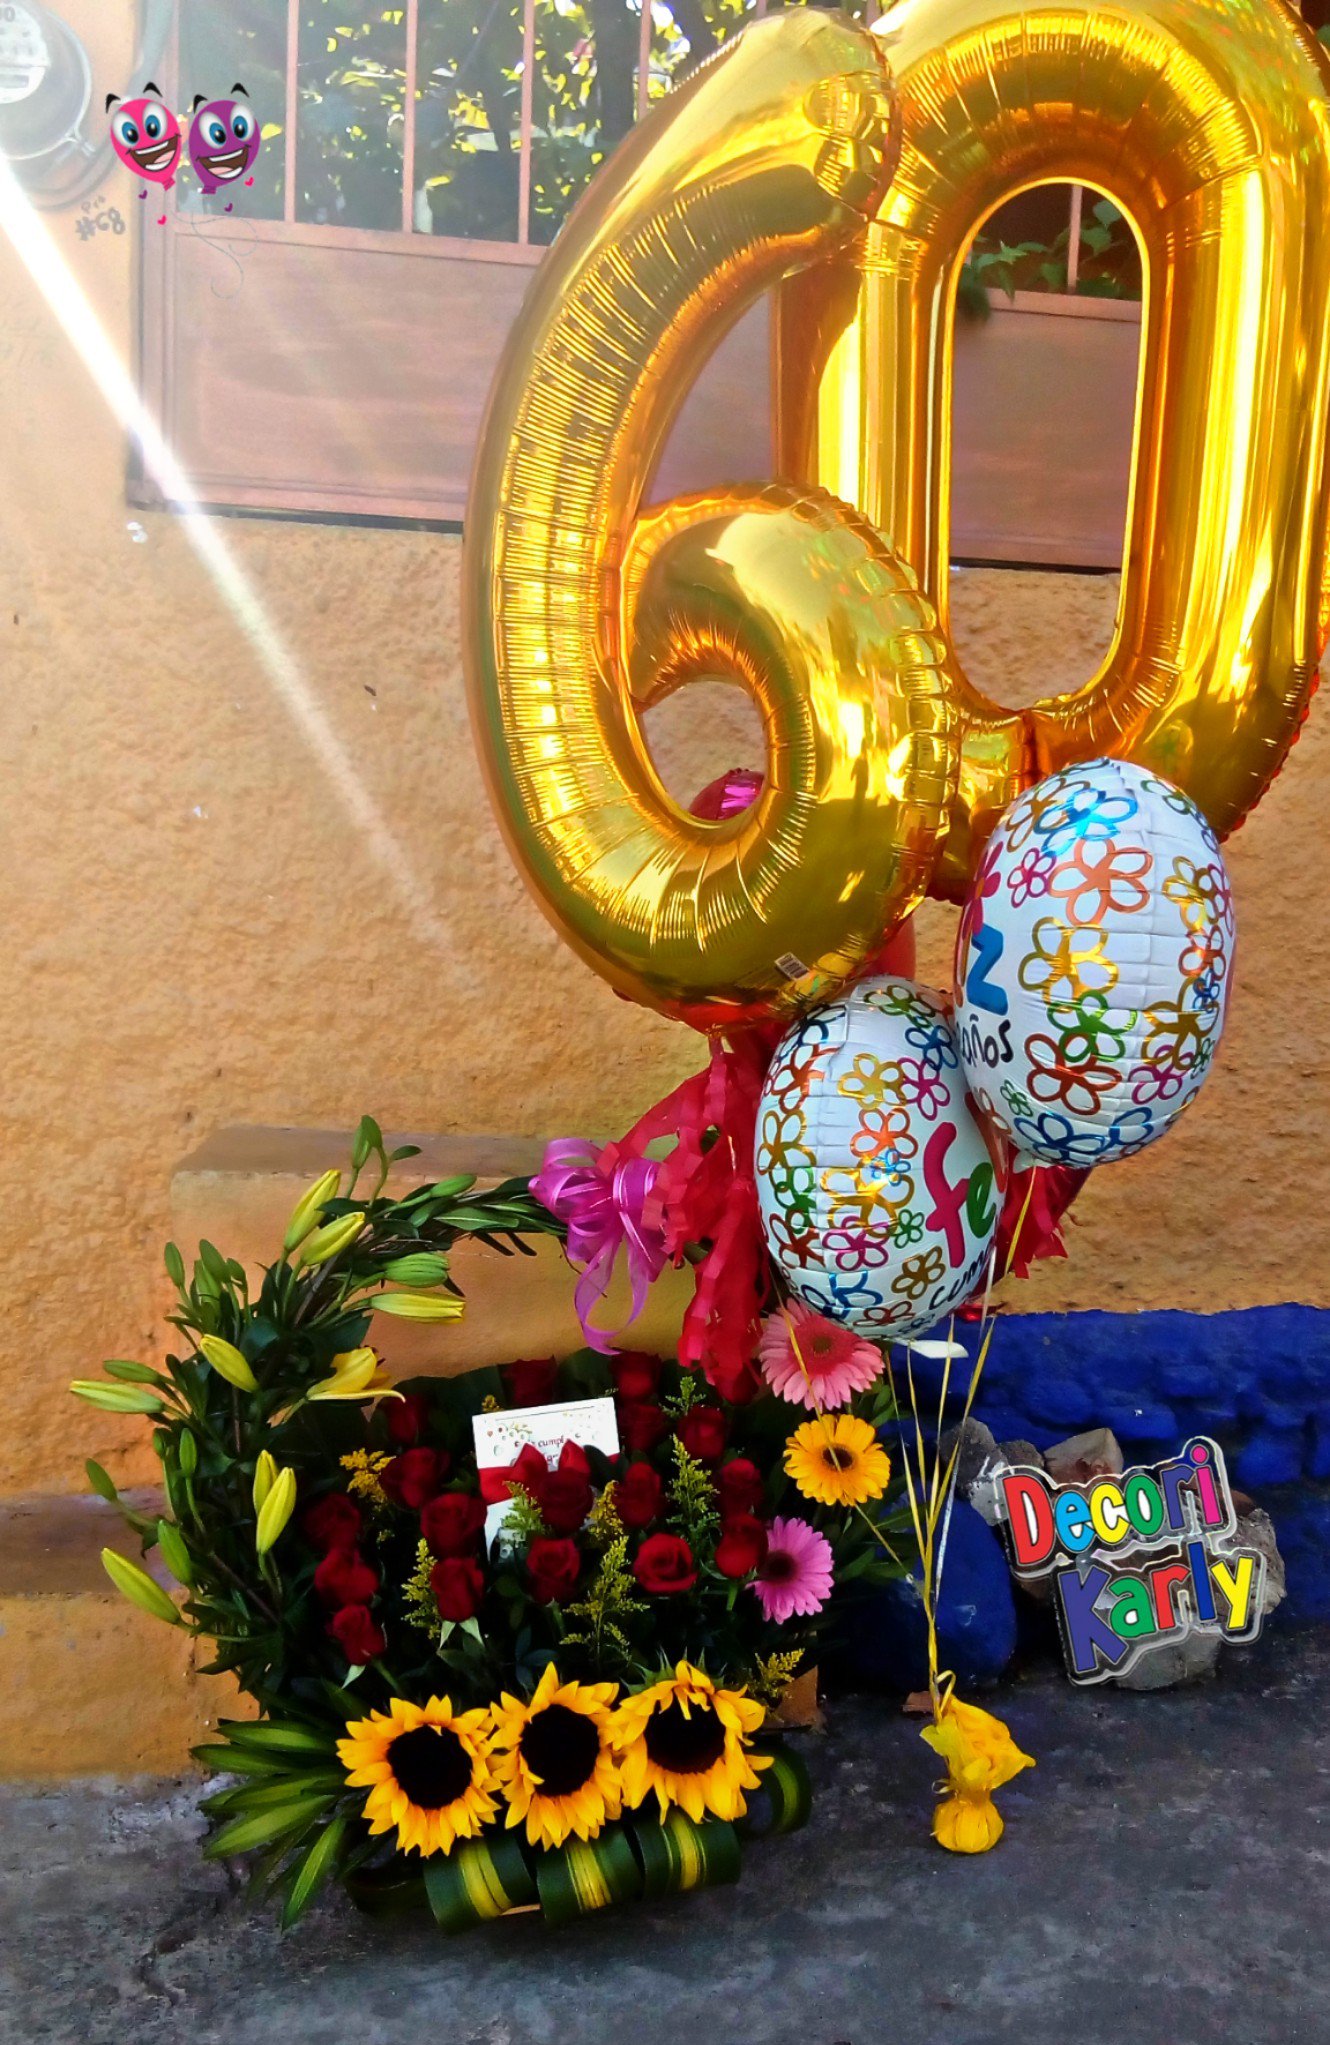 Decori Karly on X: Regalo de cumpleaños 60 años #globos #flores